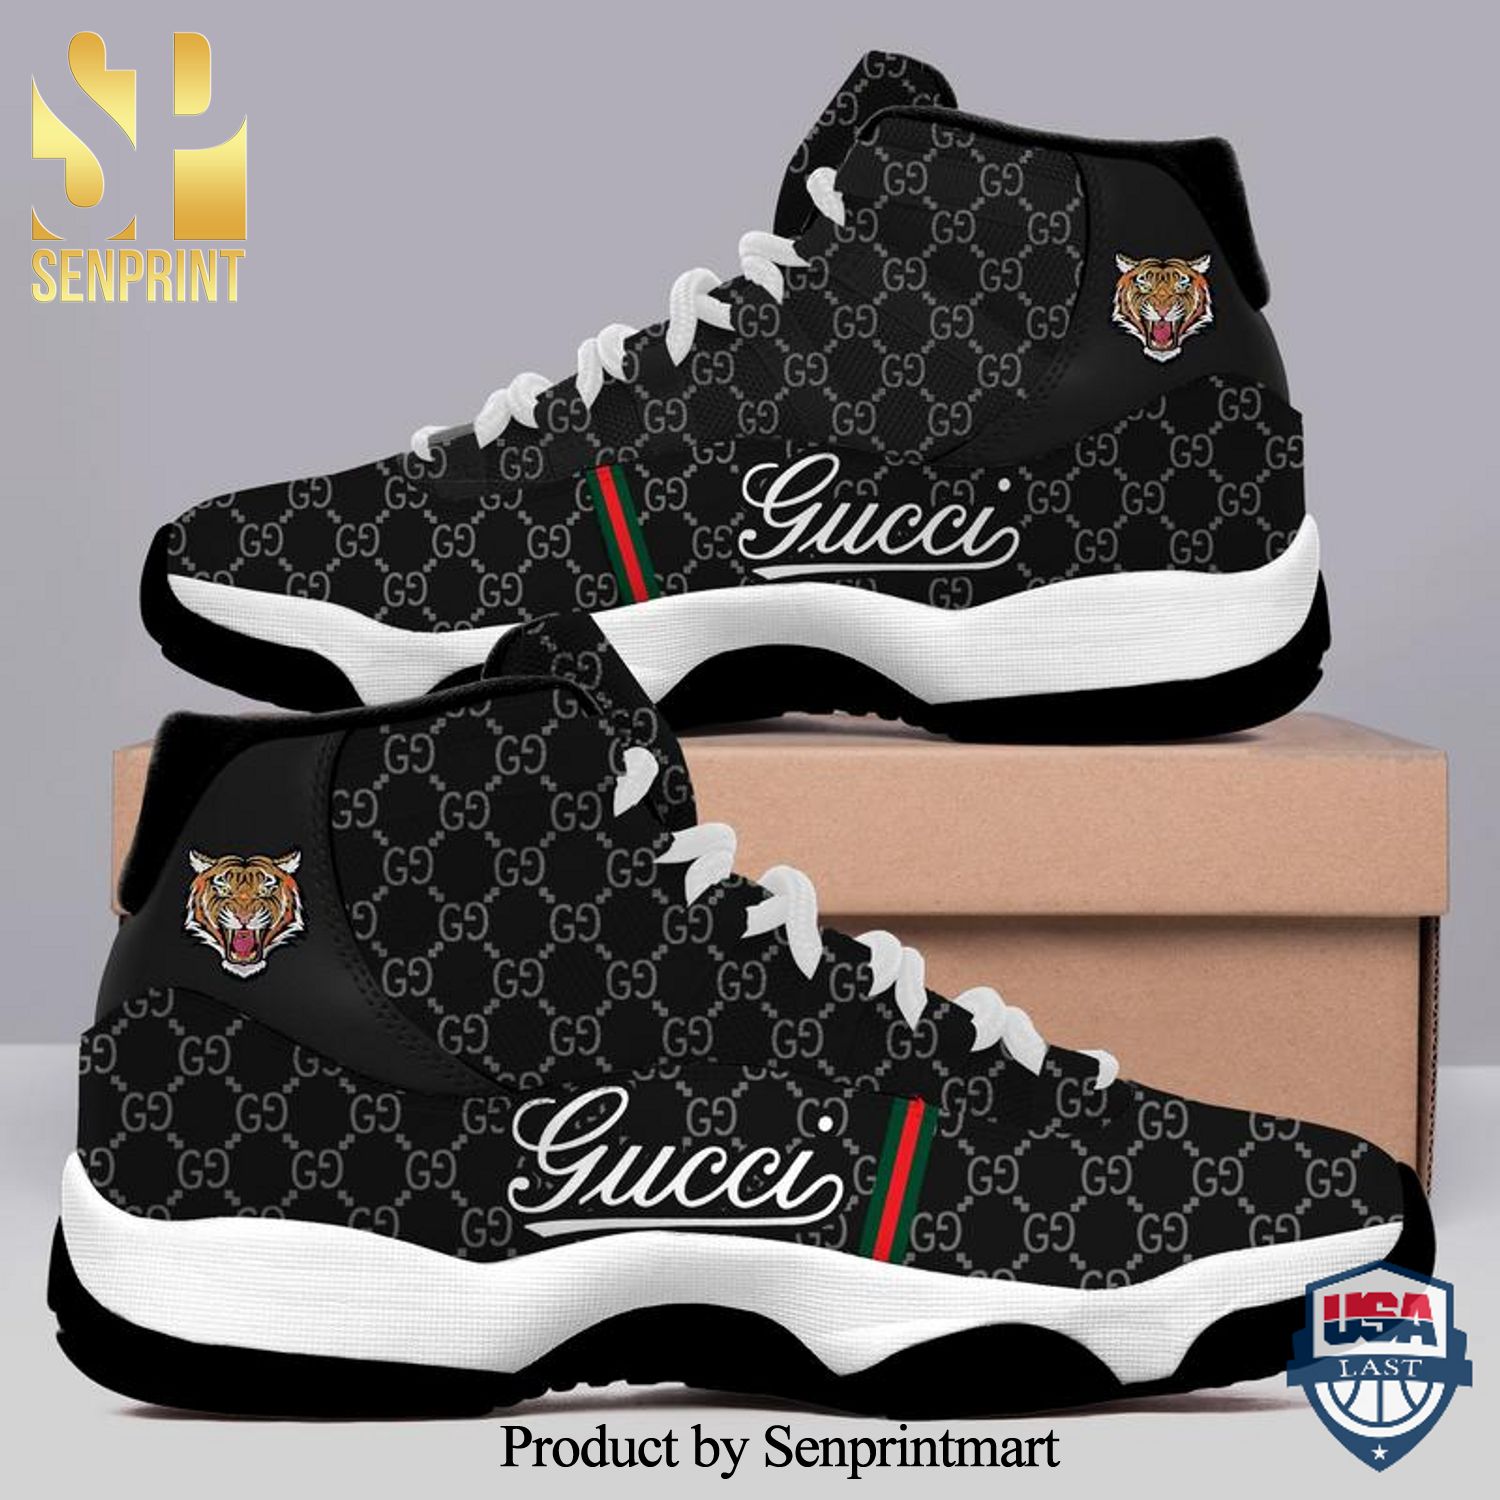 Gucci Hot Fashion 3D Air Jordan 11